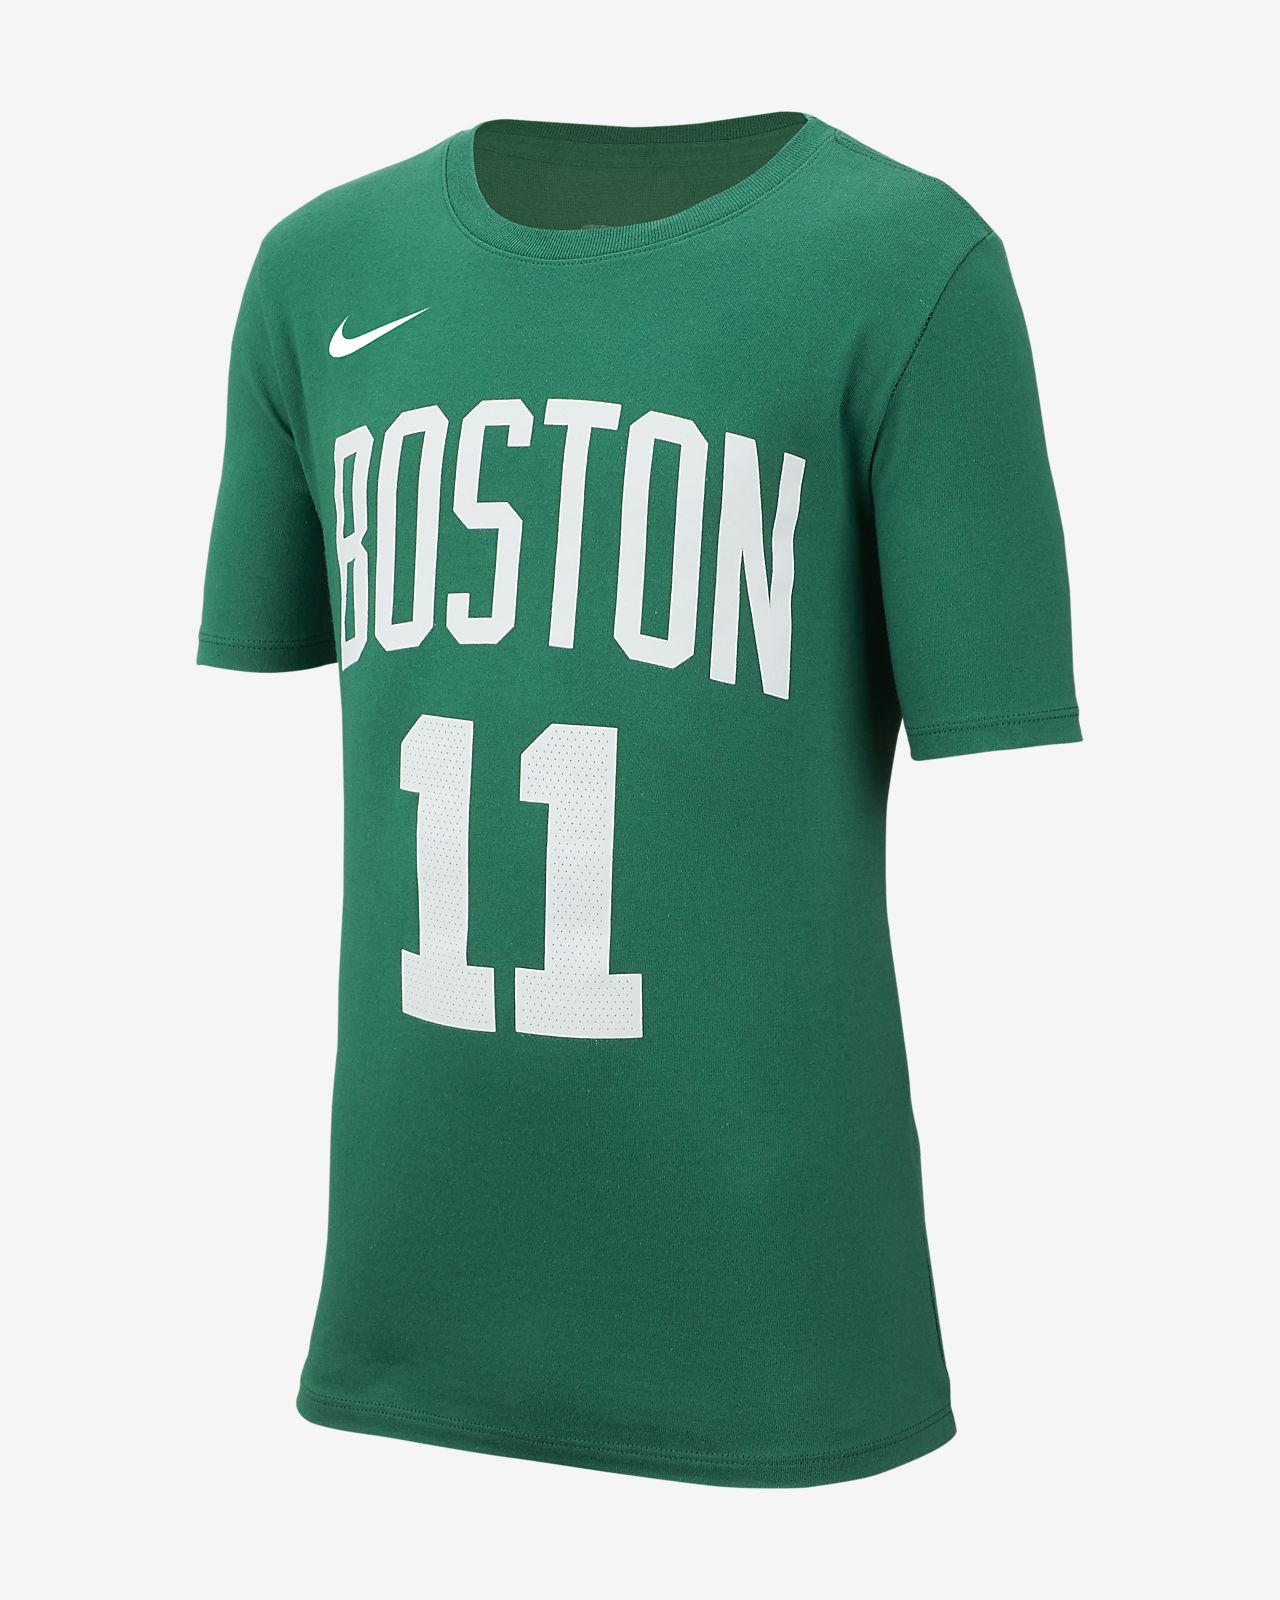 Boston Basketball T Shirt Online, 53% OFF | www.gruposincom.es